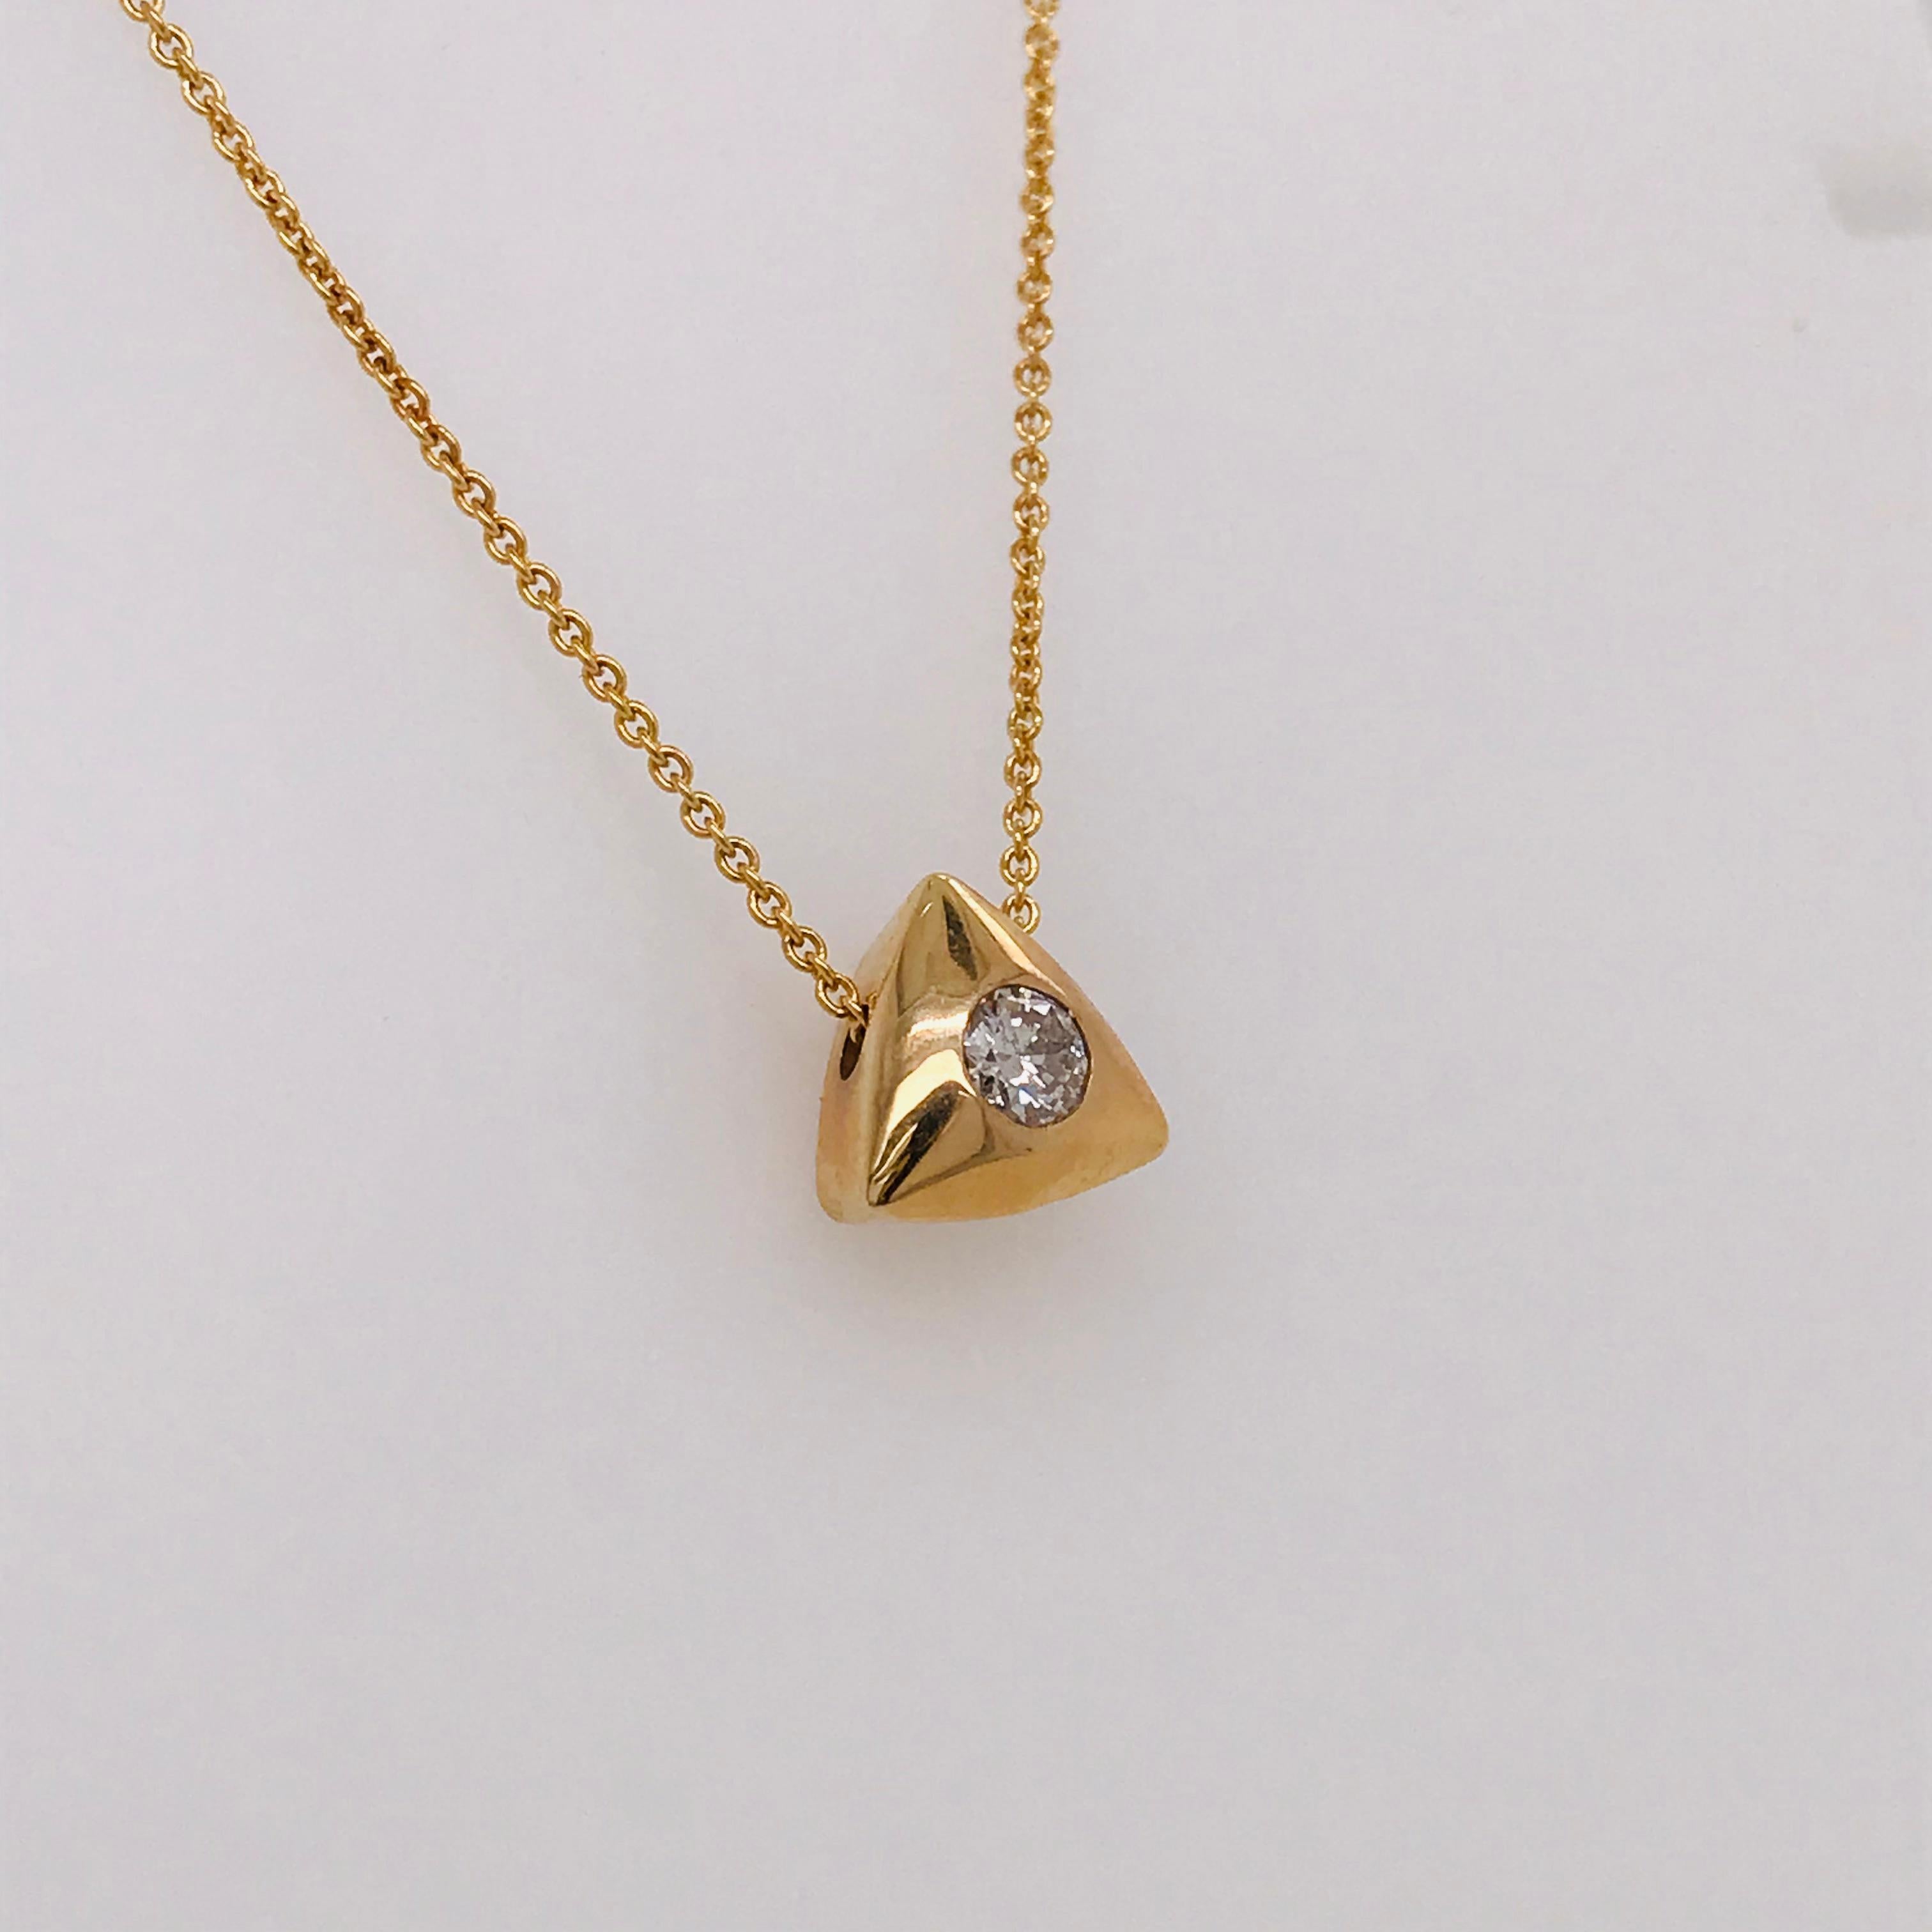 Ce pendentif en diamant comporte un diamant rond brillant de 0,25 carat serti au centre d'une monture triangulaire en or jaune 14k. Le diamant est serti au ras du pendentif en or. Le pendentif triangulaire est un pendentif coulissant qui se déplace